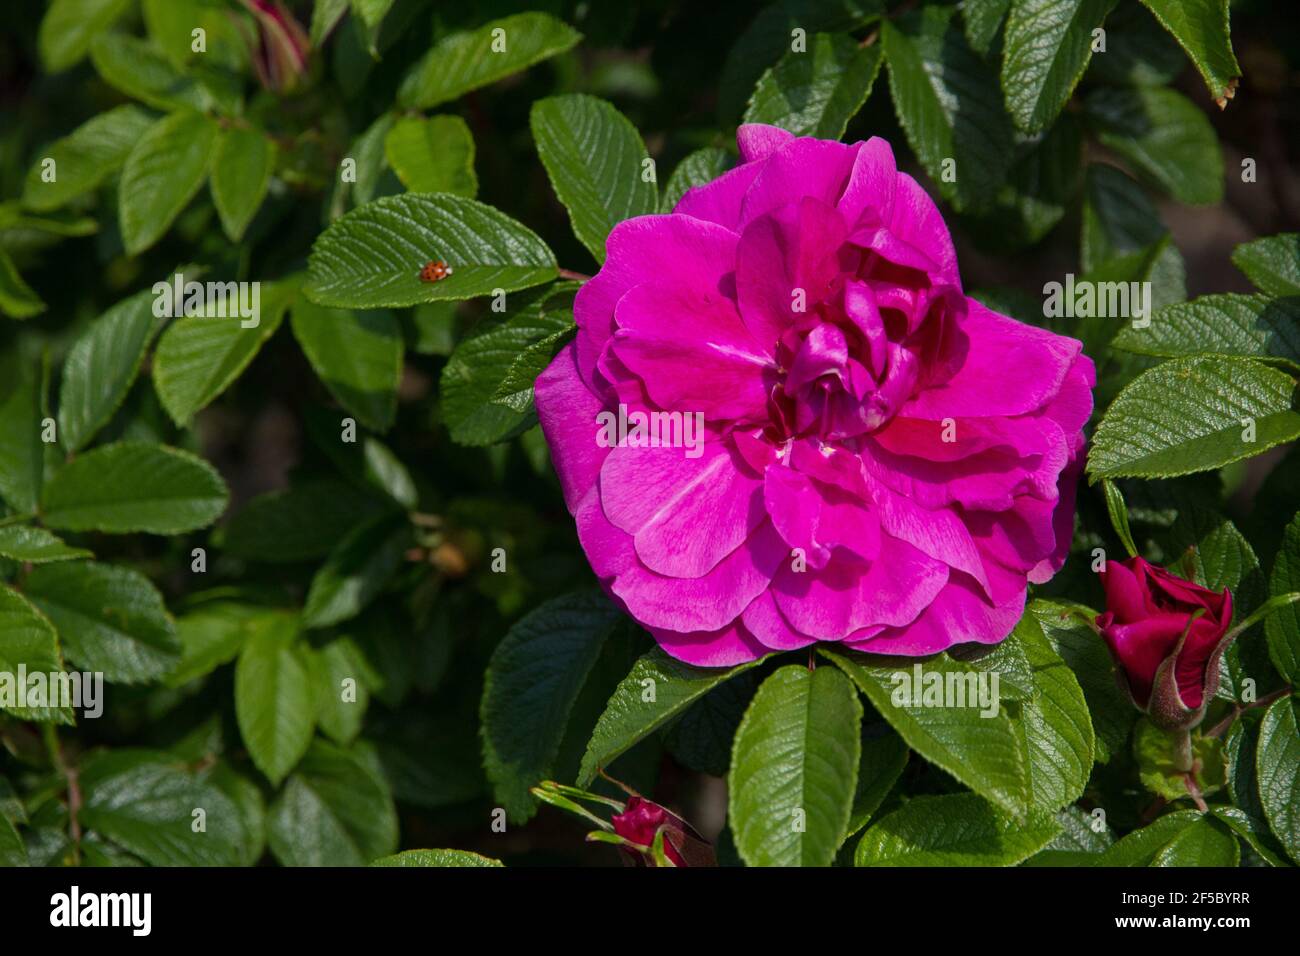 Primer plano de una rosa brillante con una pequeña mariquita roja en las hojas Foto de stock